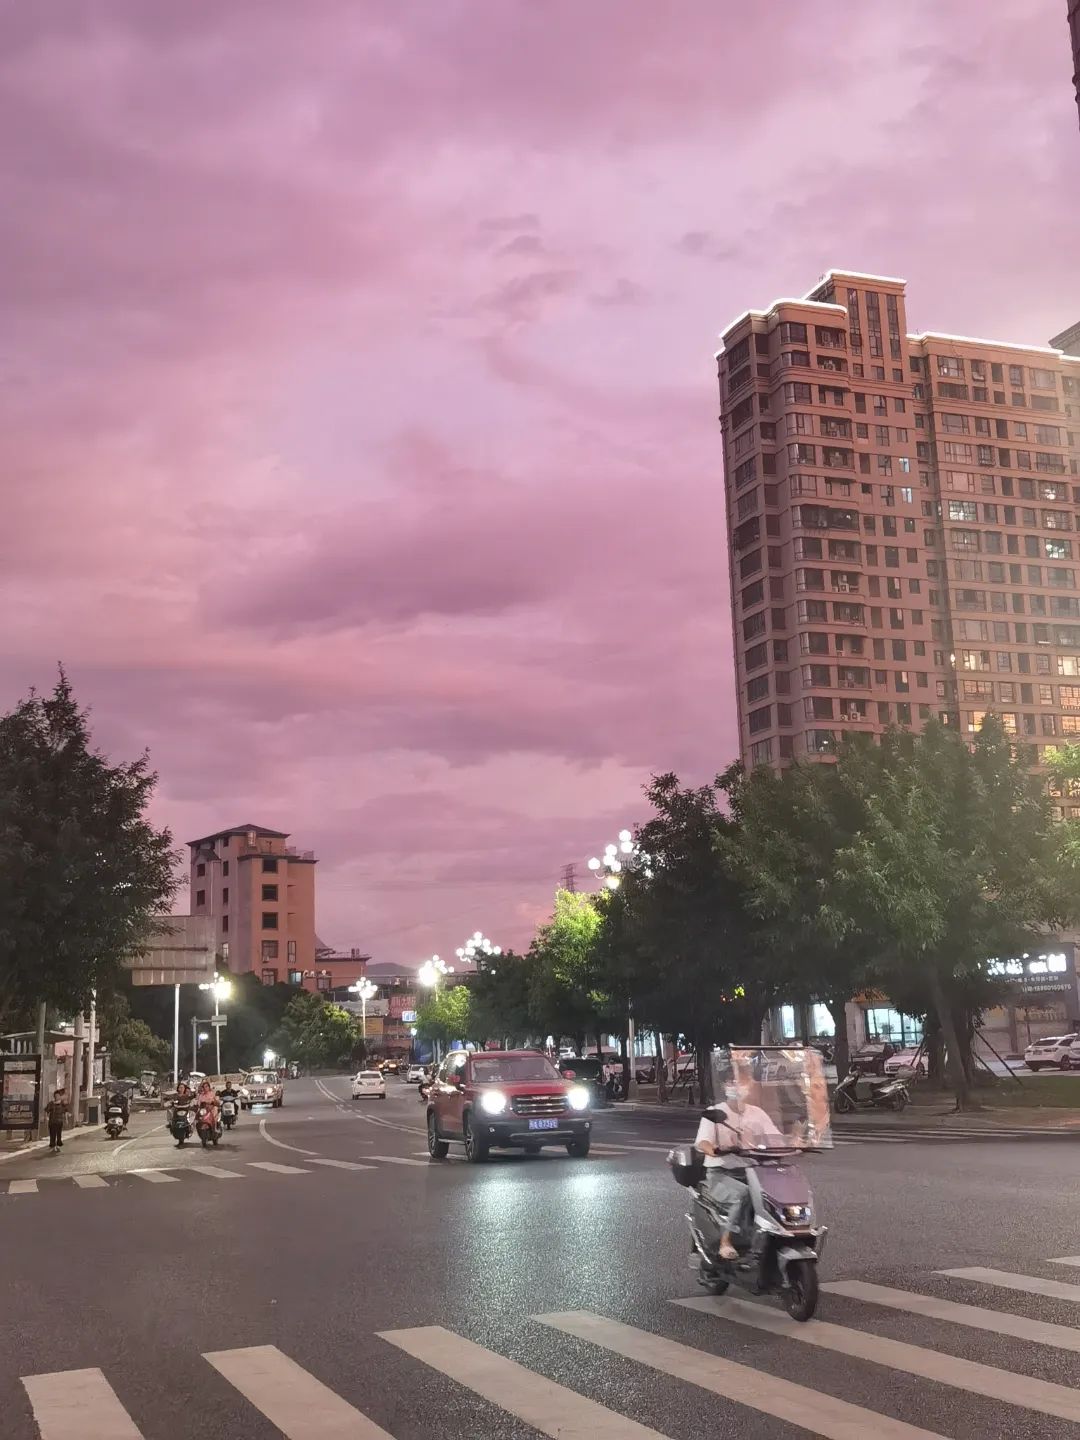 粉了！粉了！福州天空出现紫红色霞光